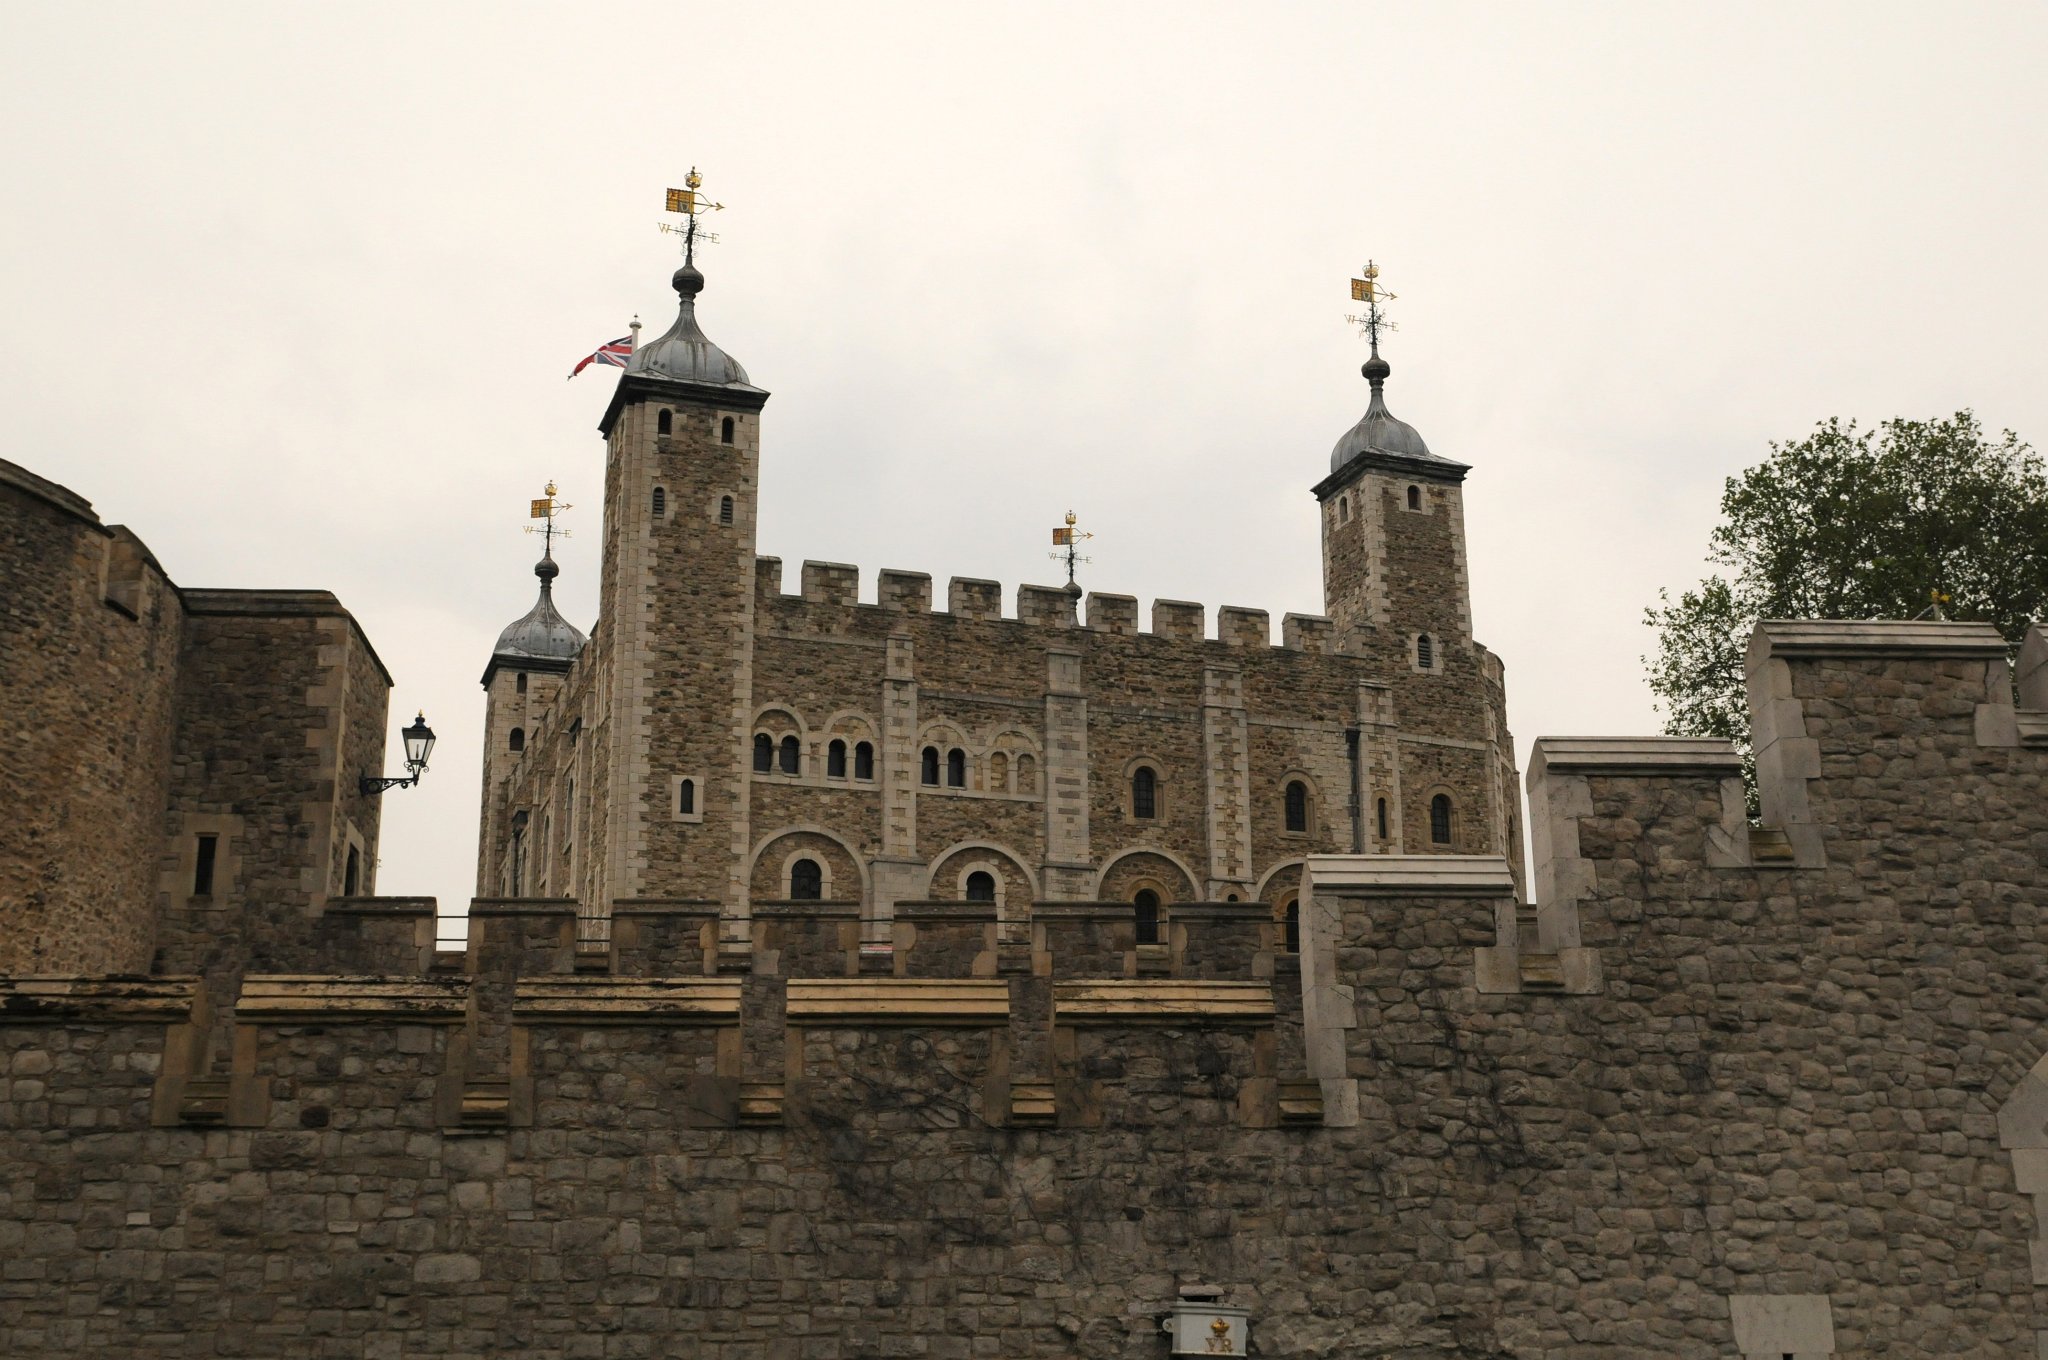 DSC_5068_3.jpg - Oficiální název londýnského Toweru (angl. Tower of London) je Palác a pevnost Jejího Veličenstva, Tower of London (Her Majesty's Palace and Fortress, The Tower of London), ačkoli posledním králem, který ho používal jako palác byl král Jakub I. (1566 – 1625).